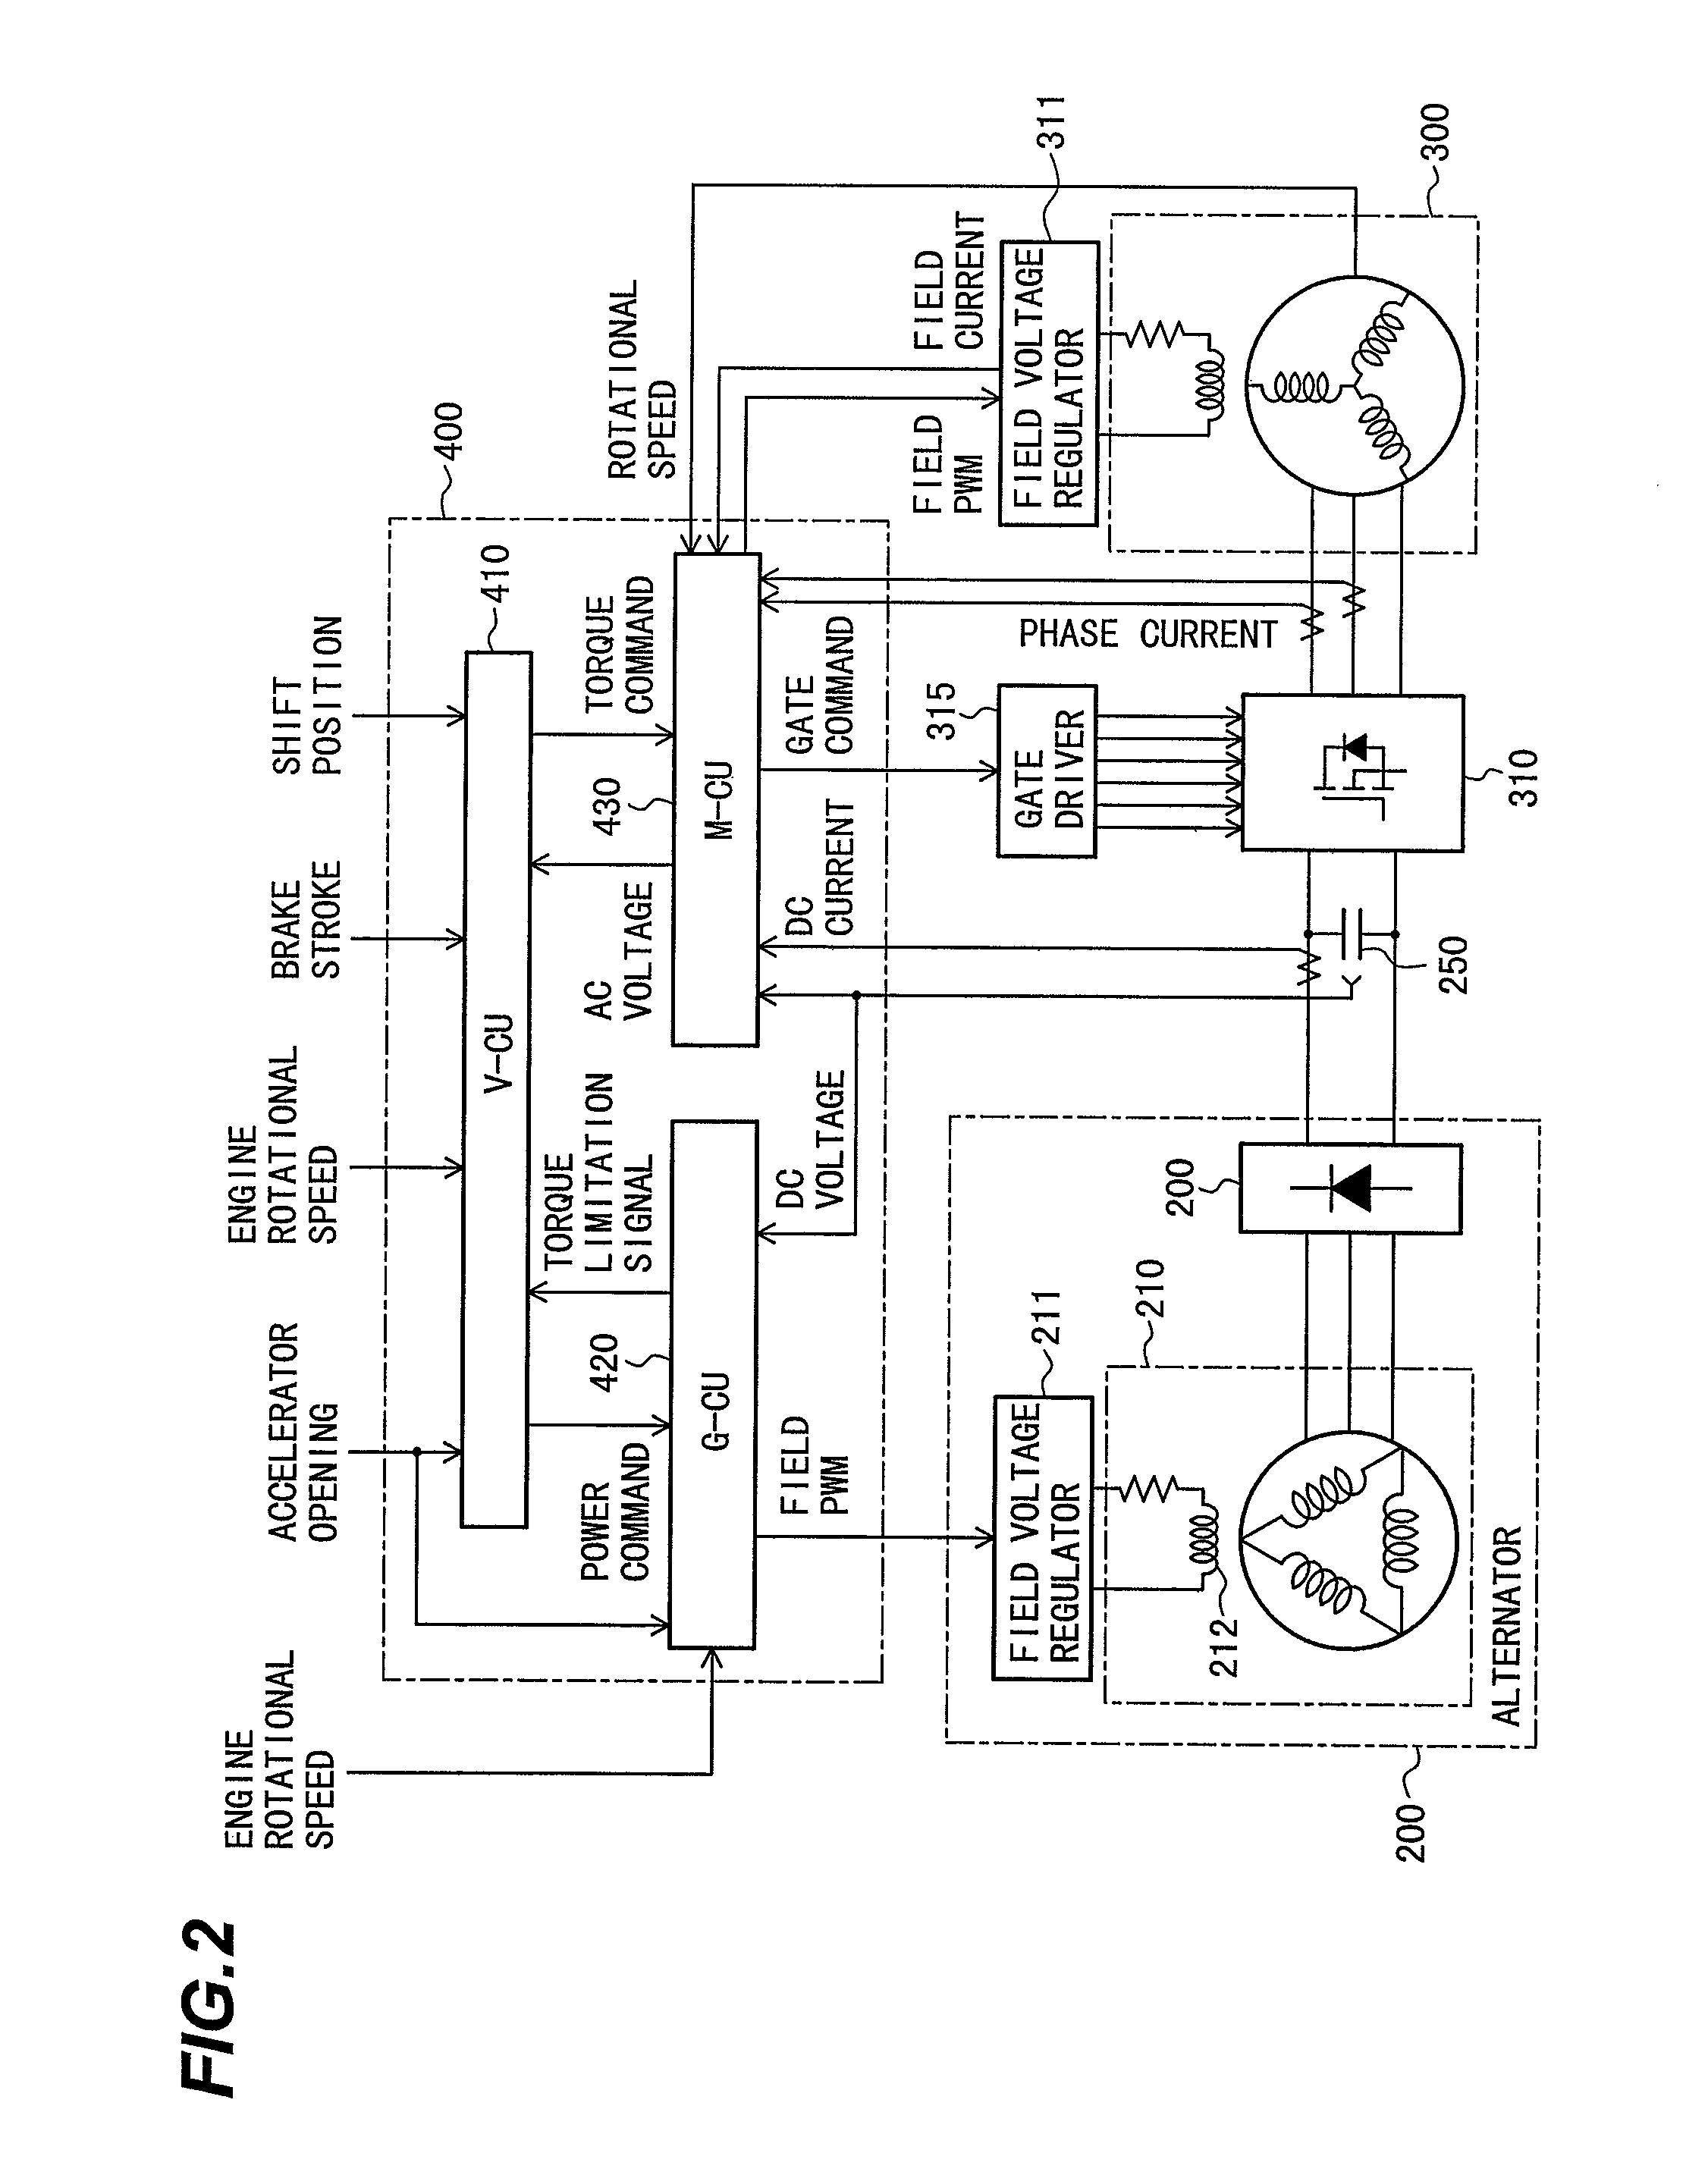 Generator control unit